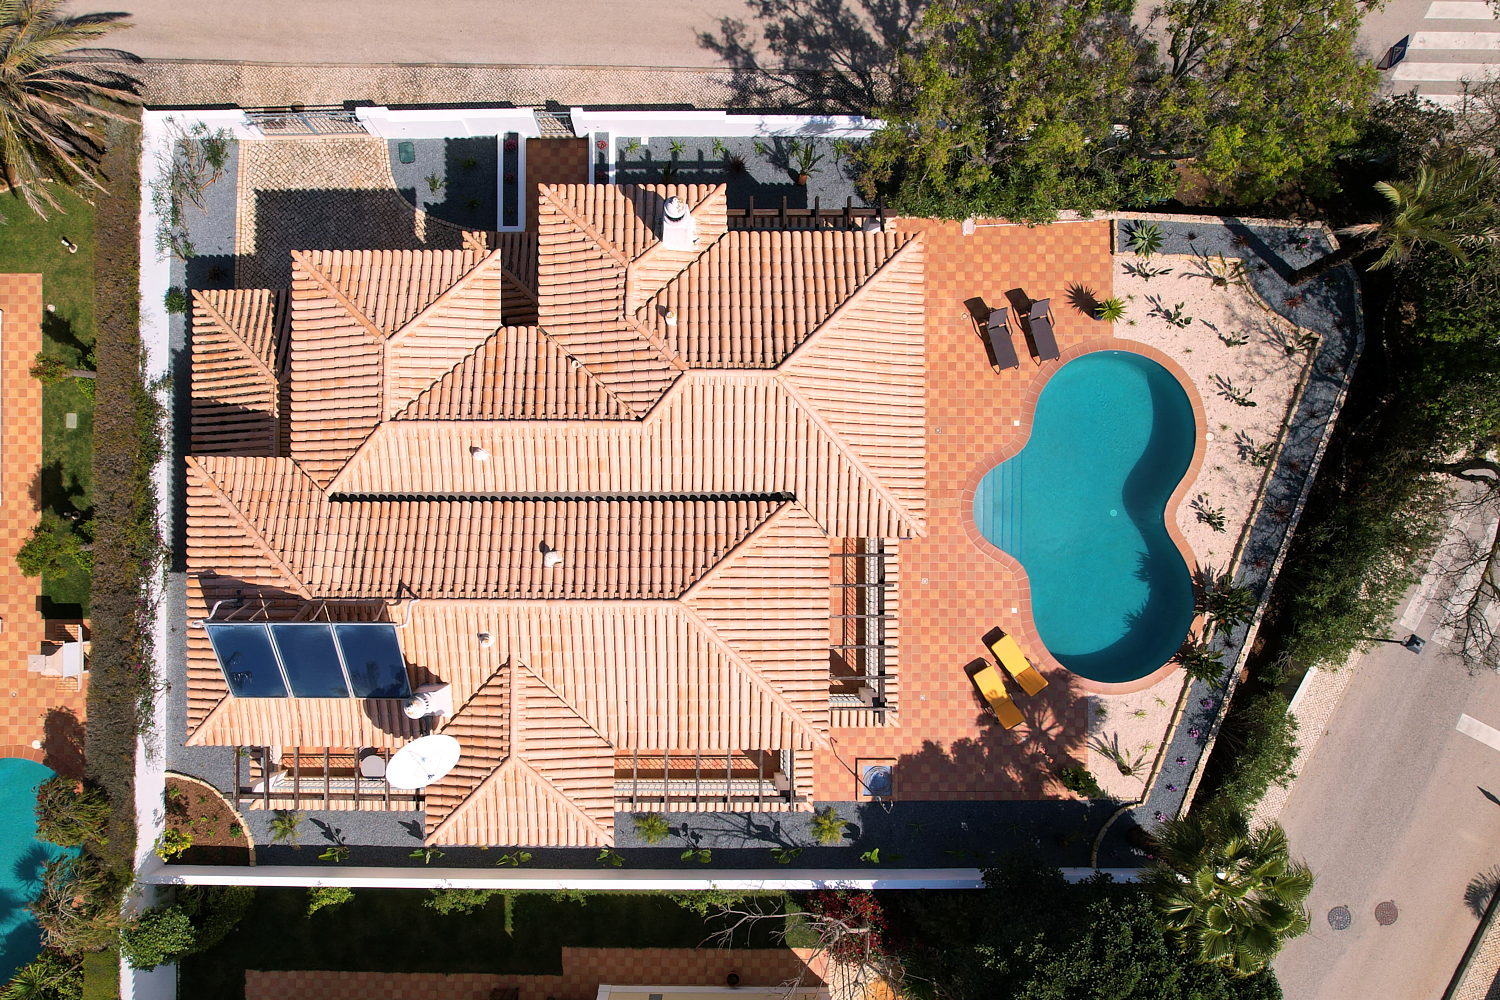 Fotos Drone ajudam a alugar uma casa de férias